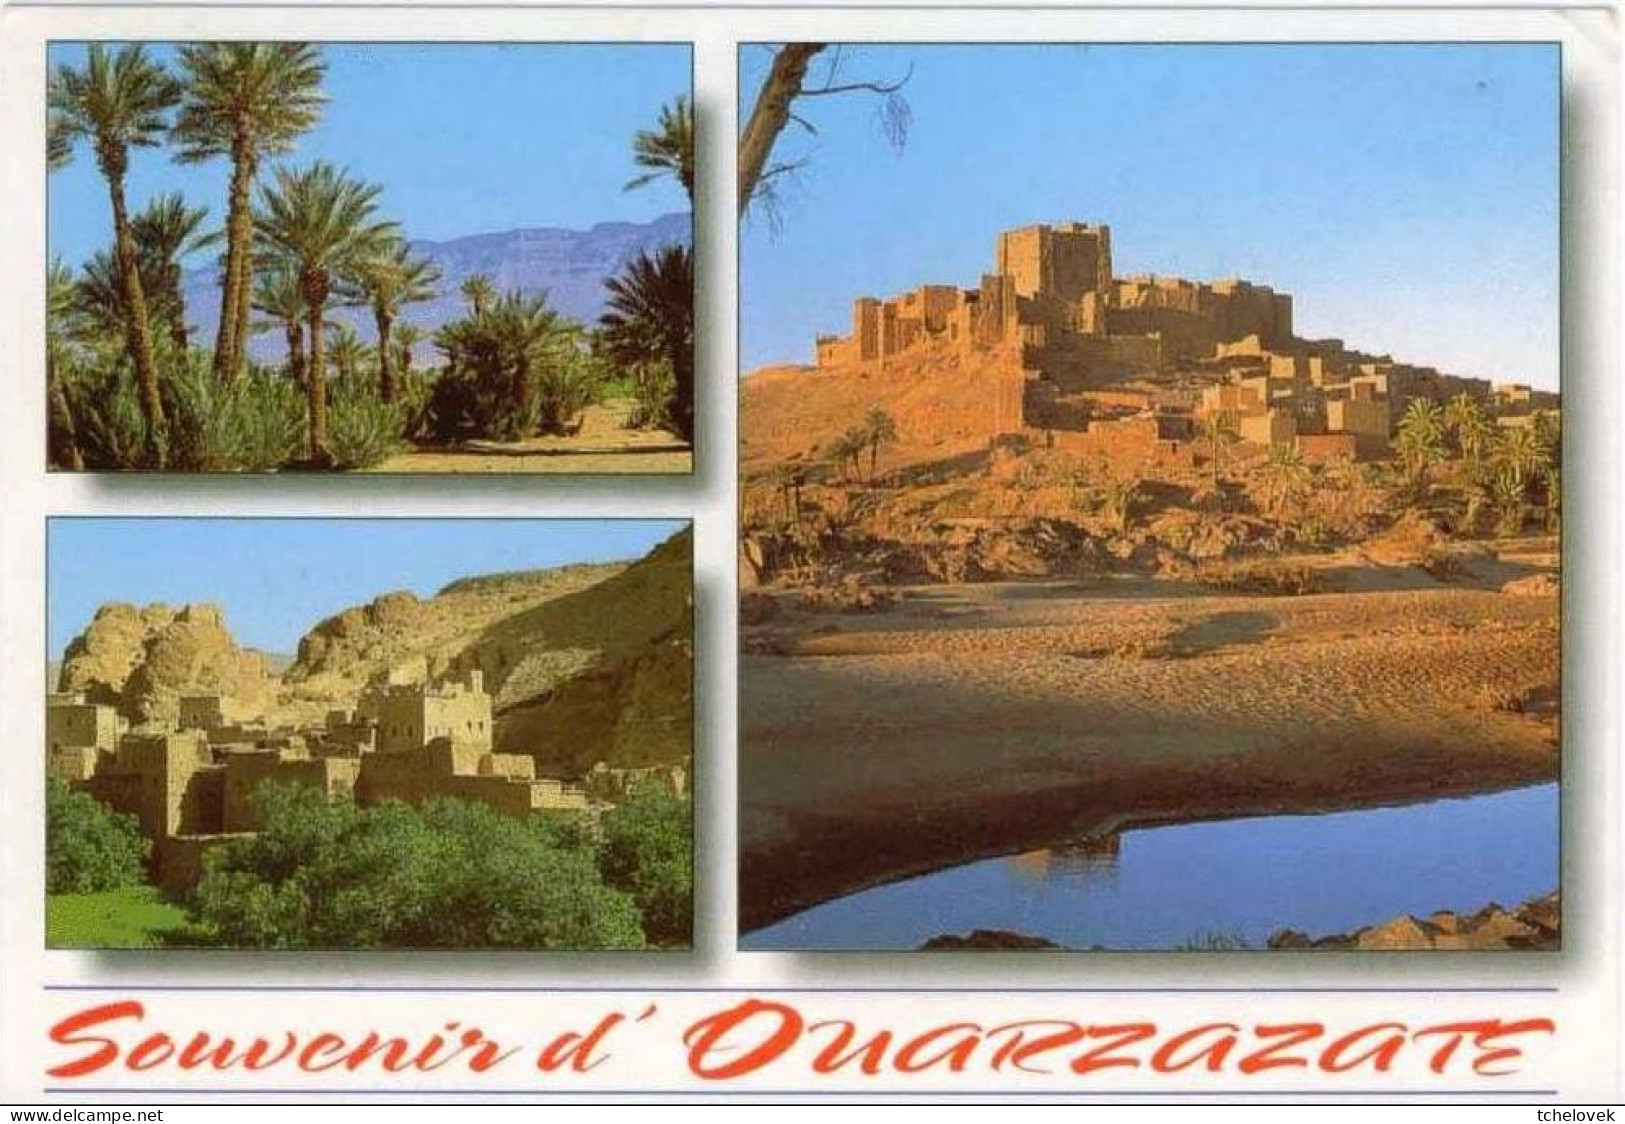 (99). Maroc Morocco. 6 cp. Agadir Ouazazate